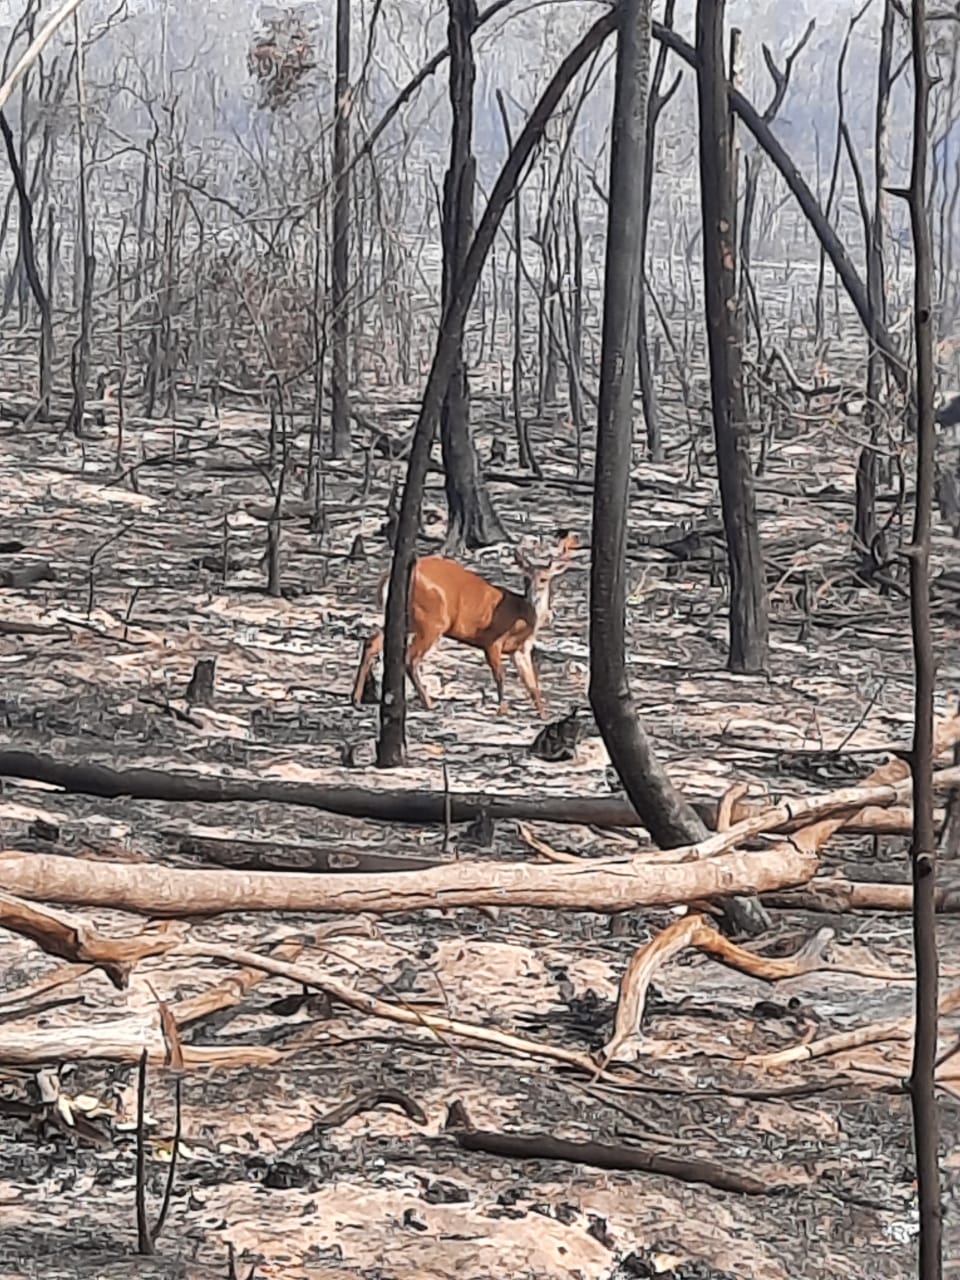 floresta queimada com veado entre as árvores